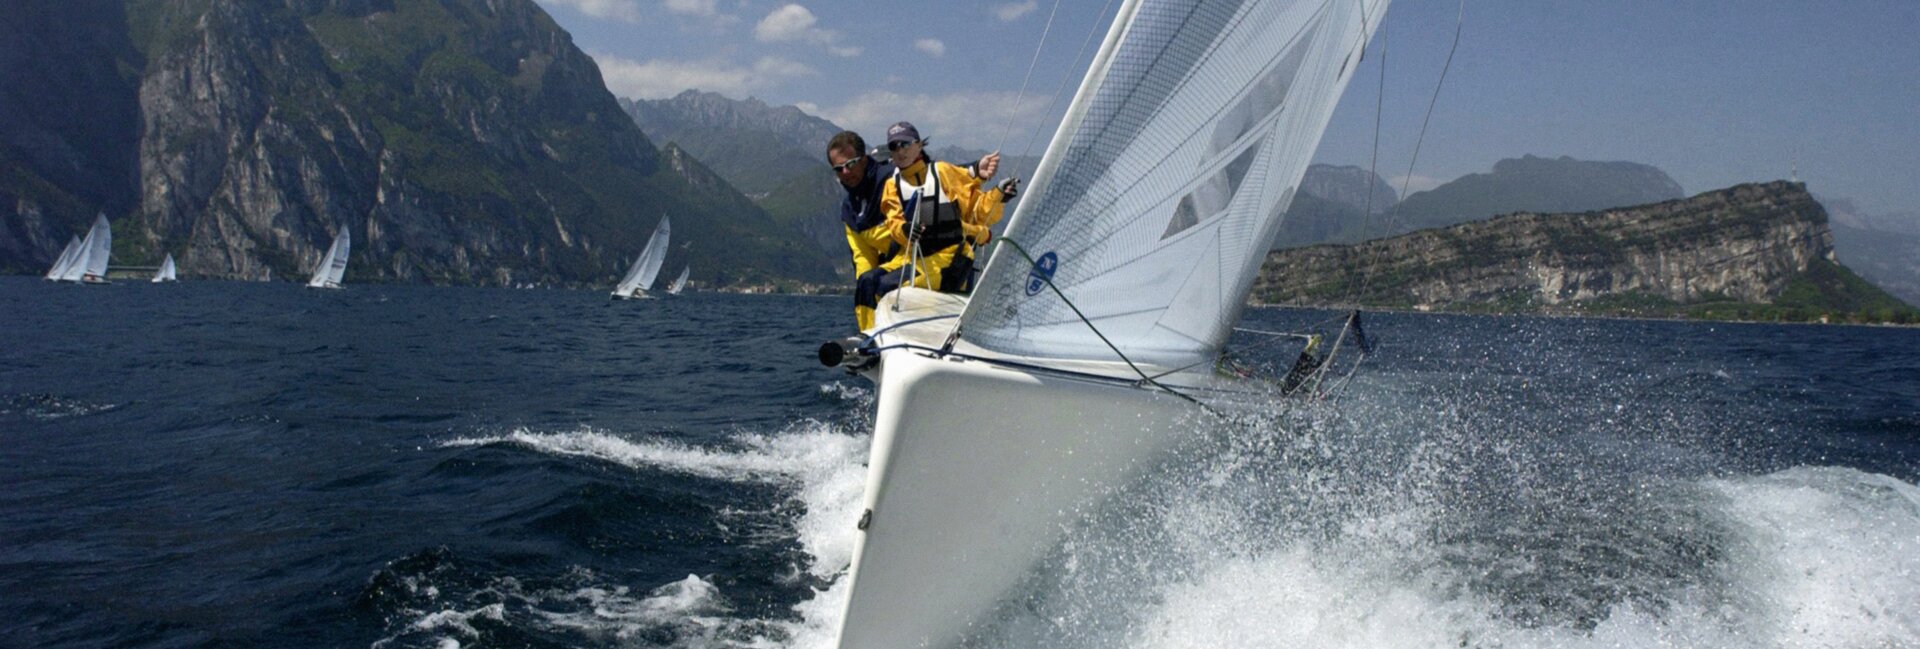 Lago di Garda - Barca a vela
